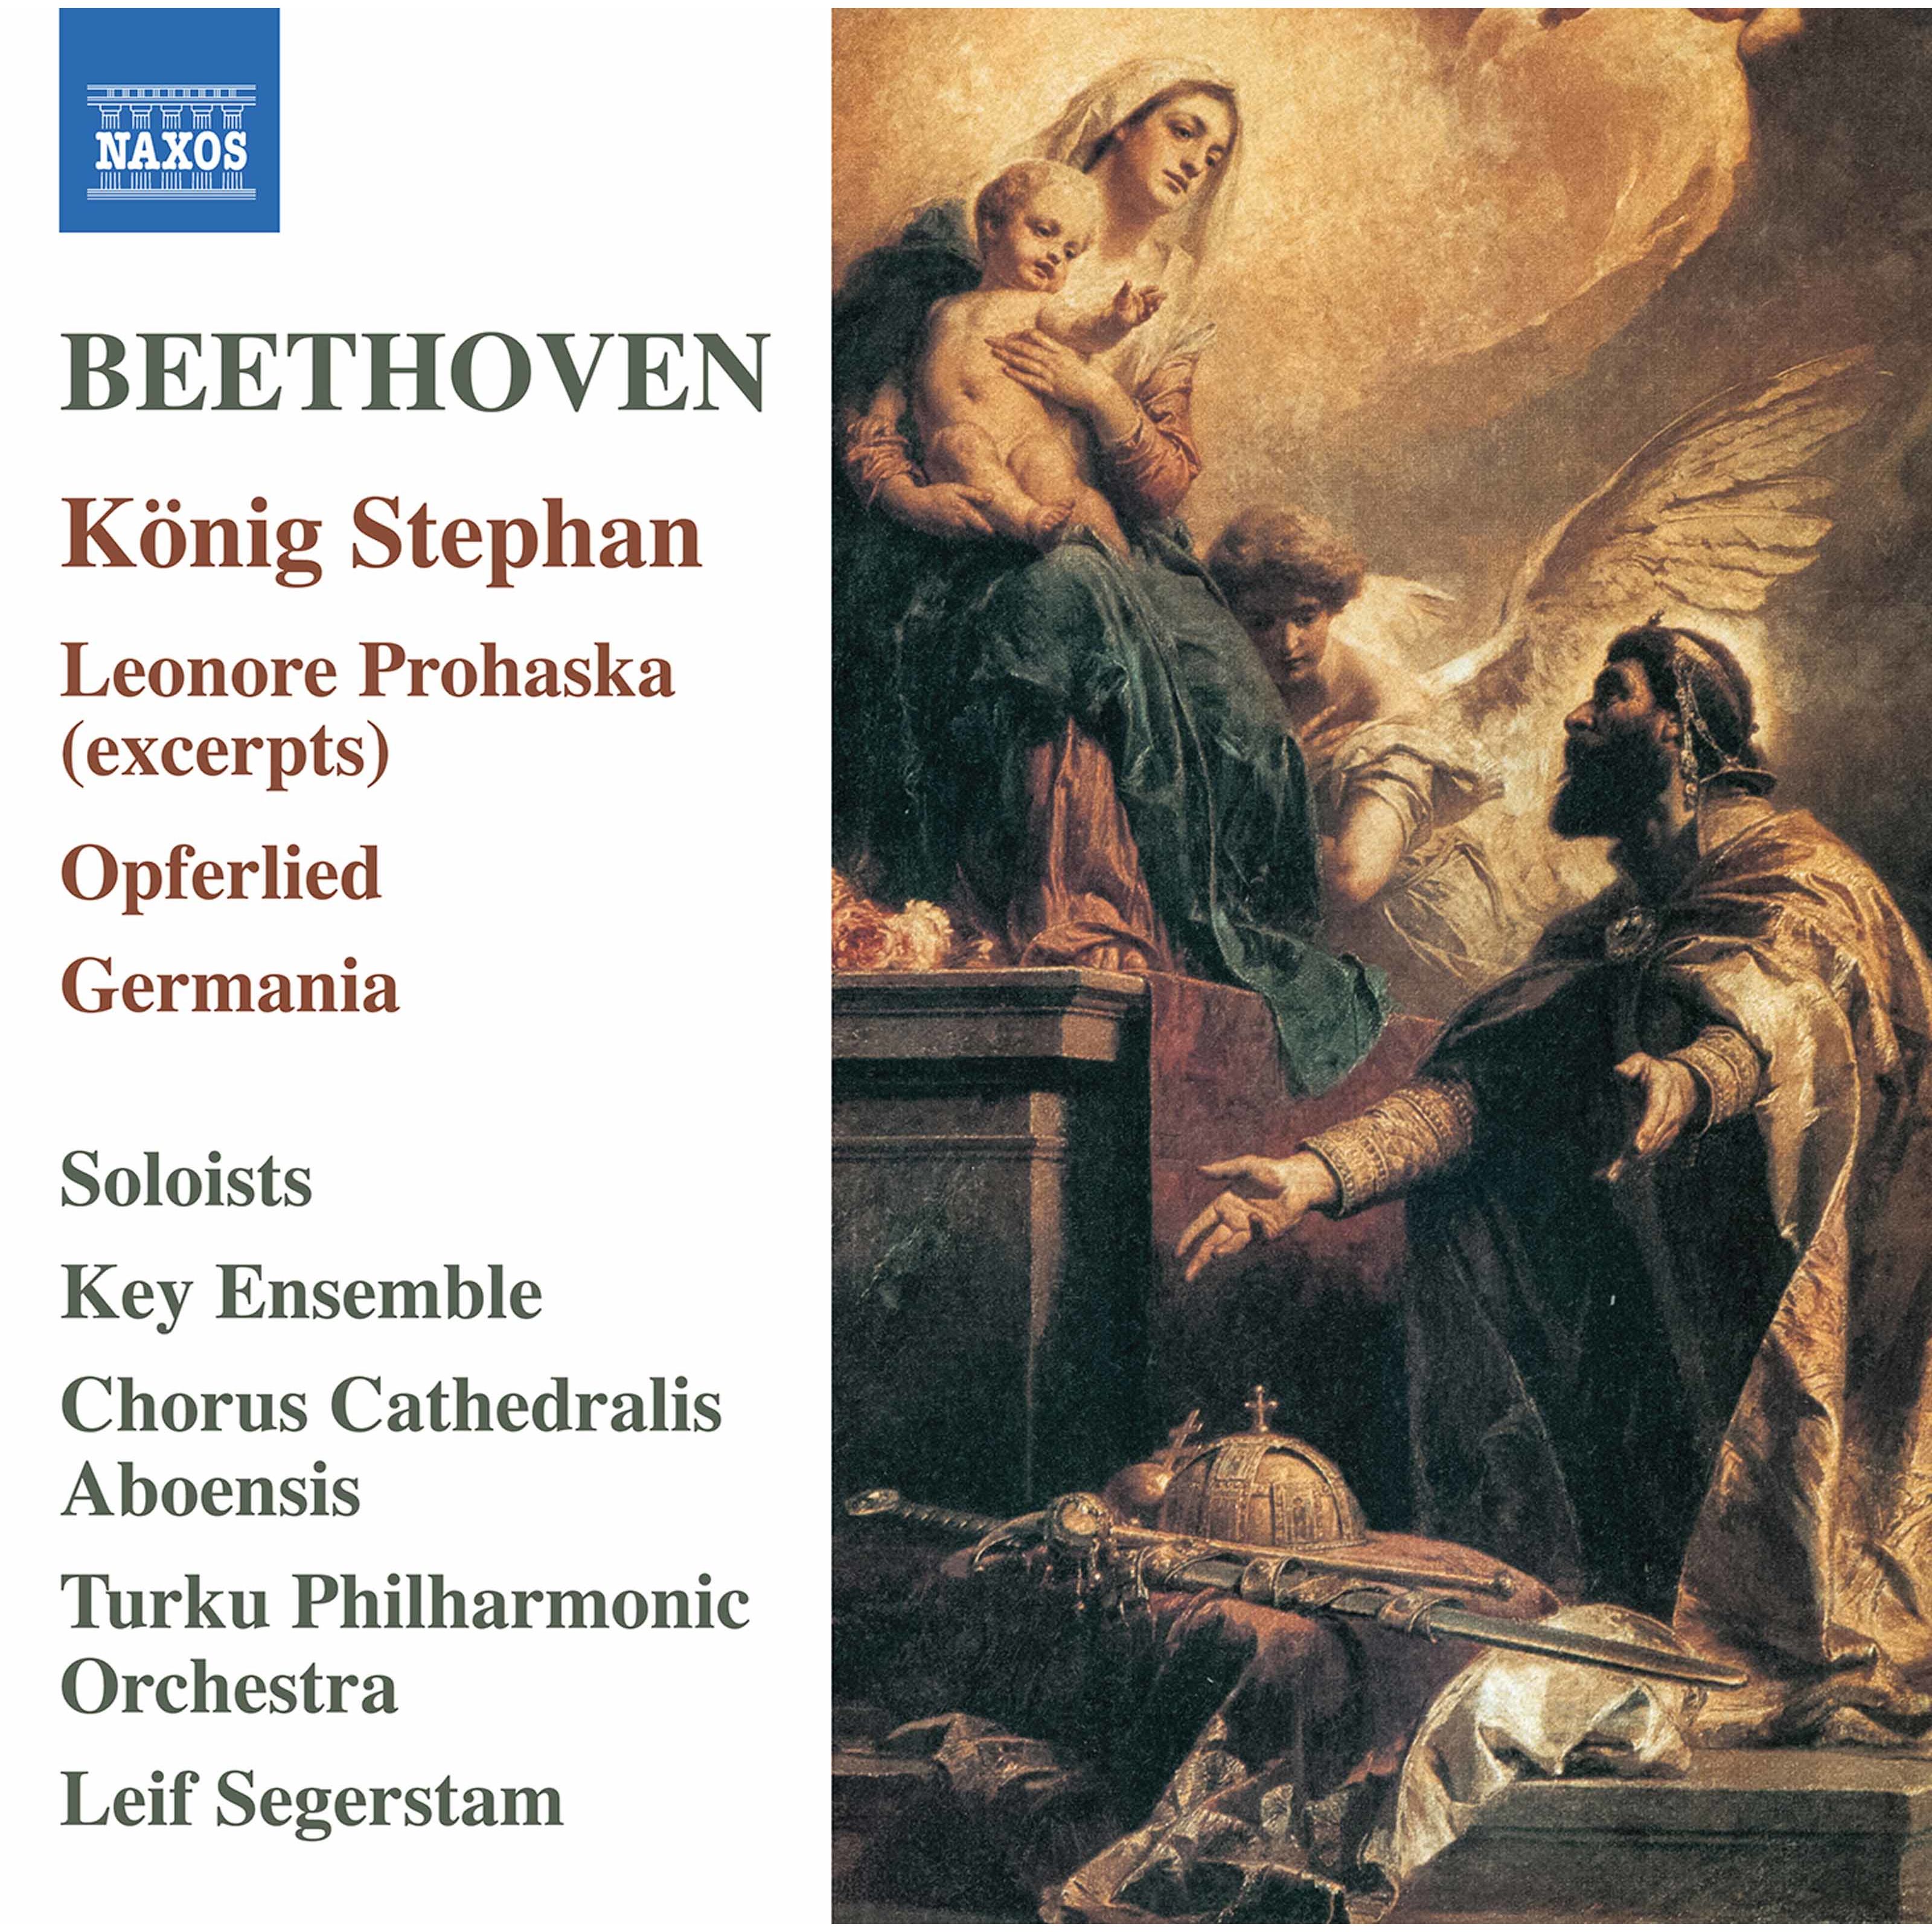 Turku Philharmonic Orchestra & Leif Segerstam - Beethoven: König Stephan & Other Choral Works (2020) [FLAC 24bit/96kHz]